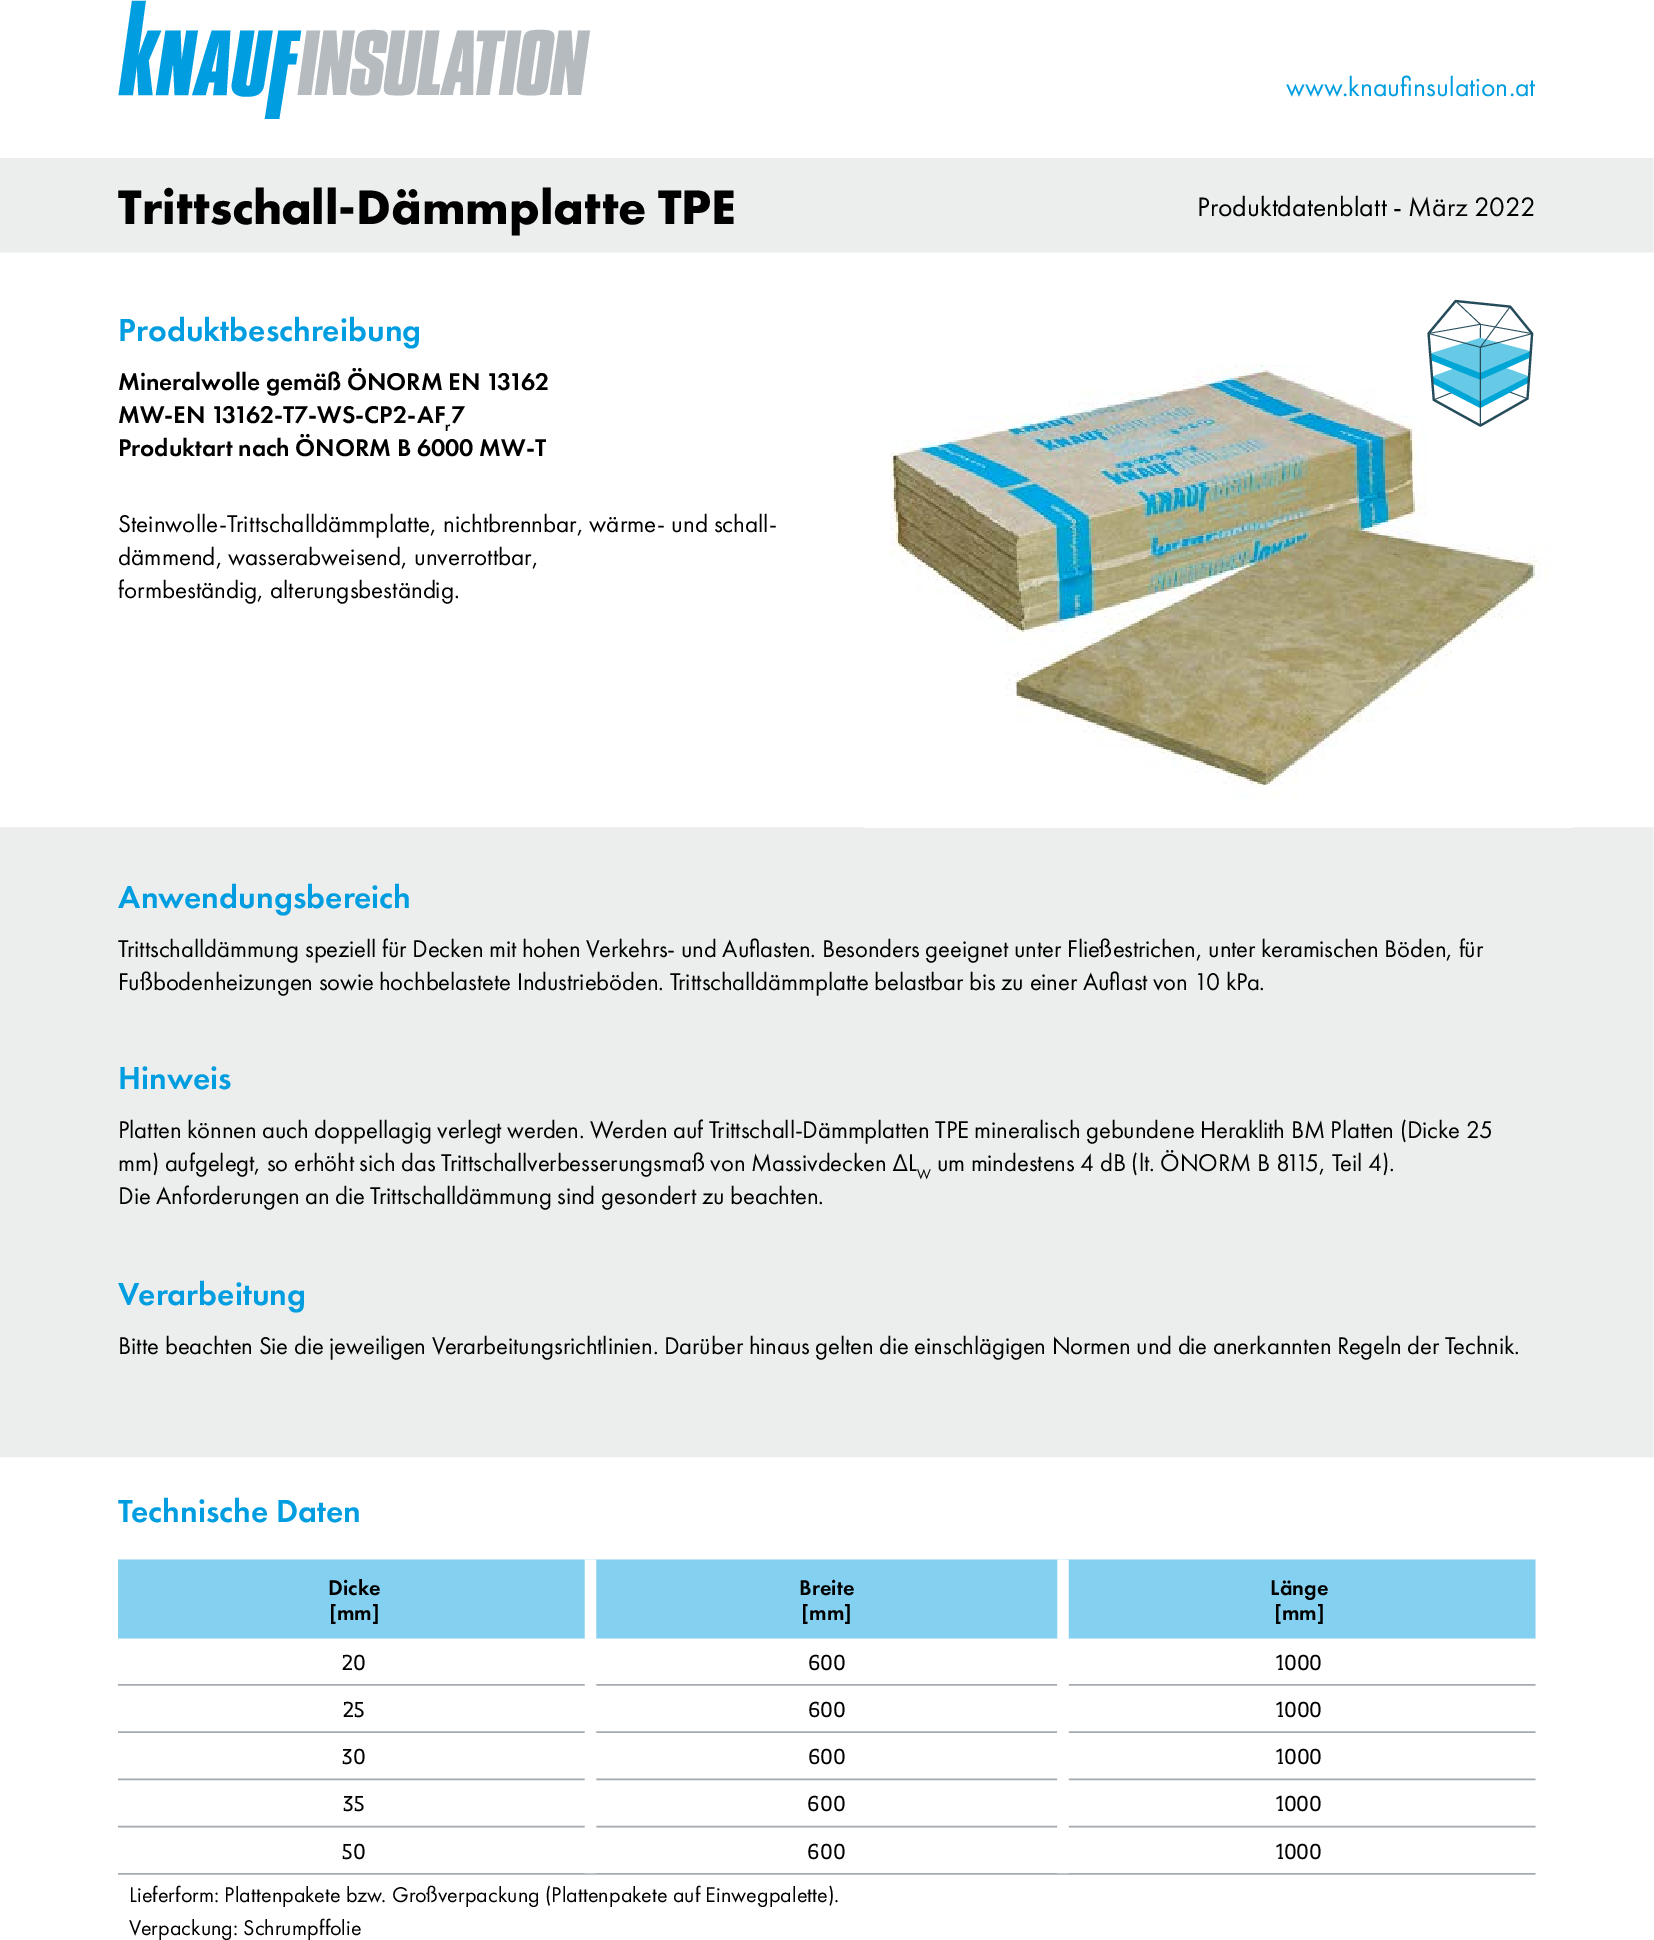 Trittschall-Dämmplatte TPE, Produktdatenblatt